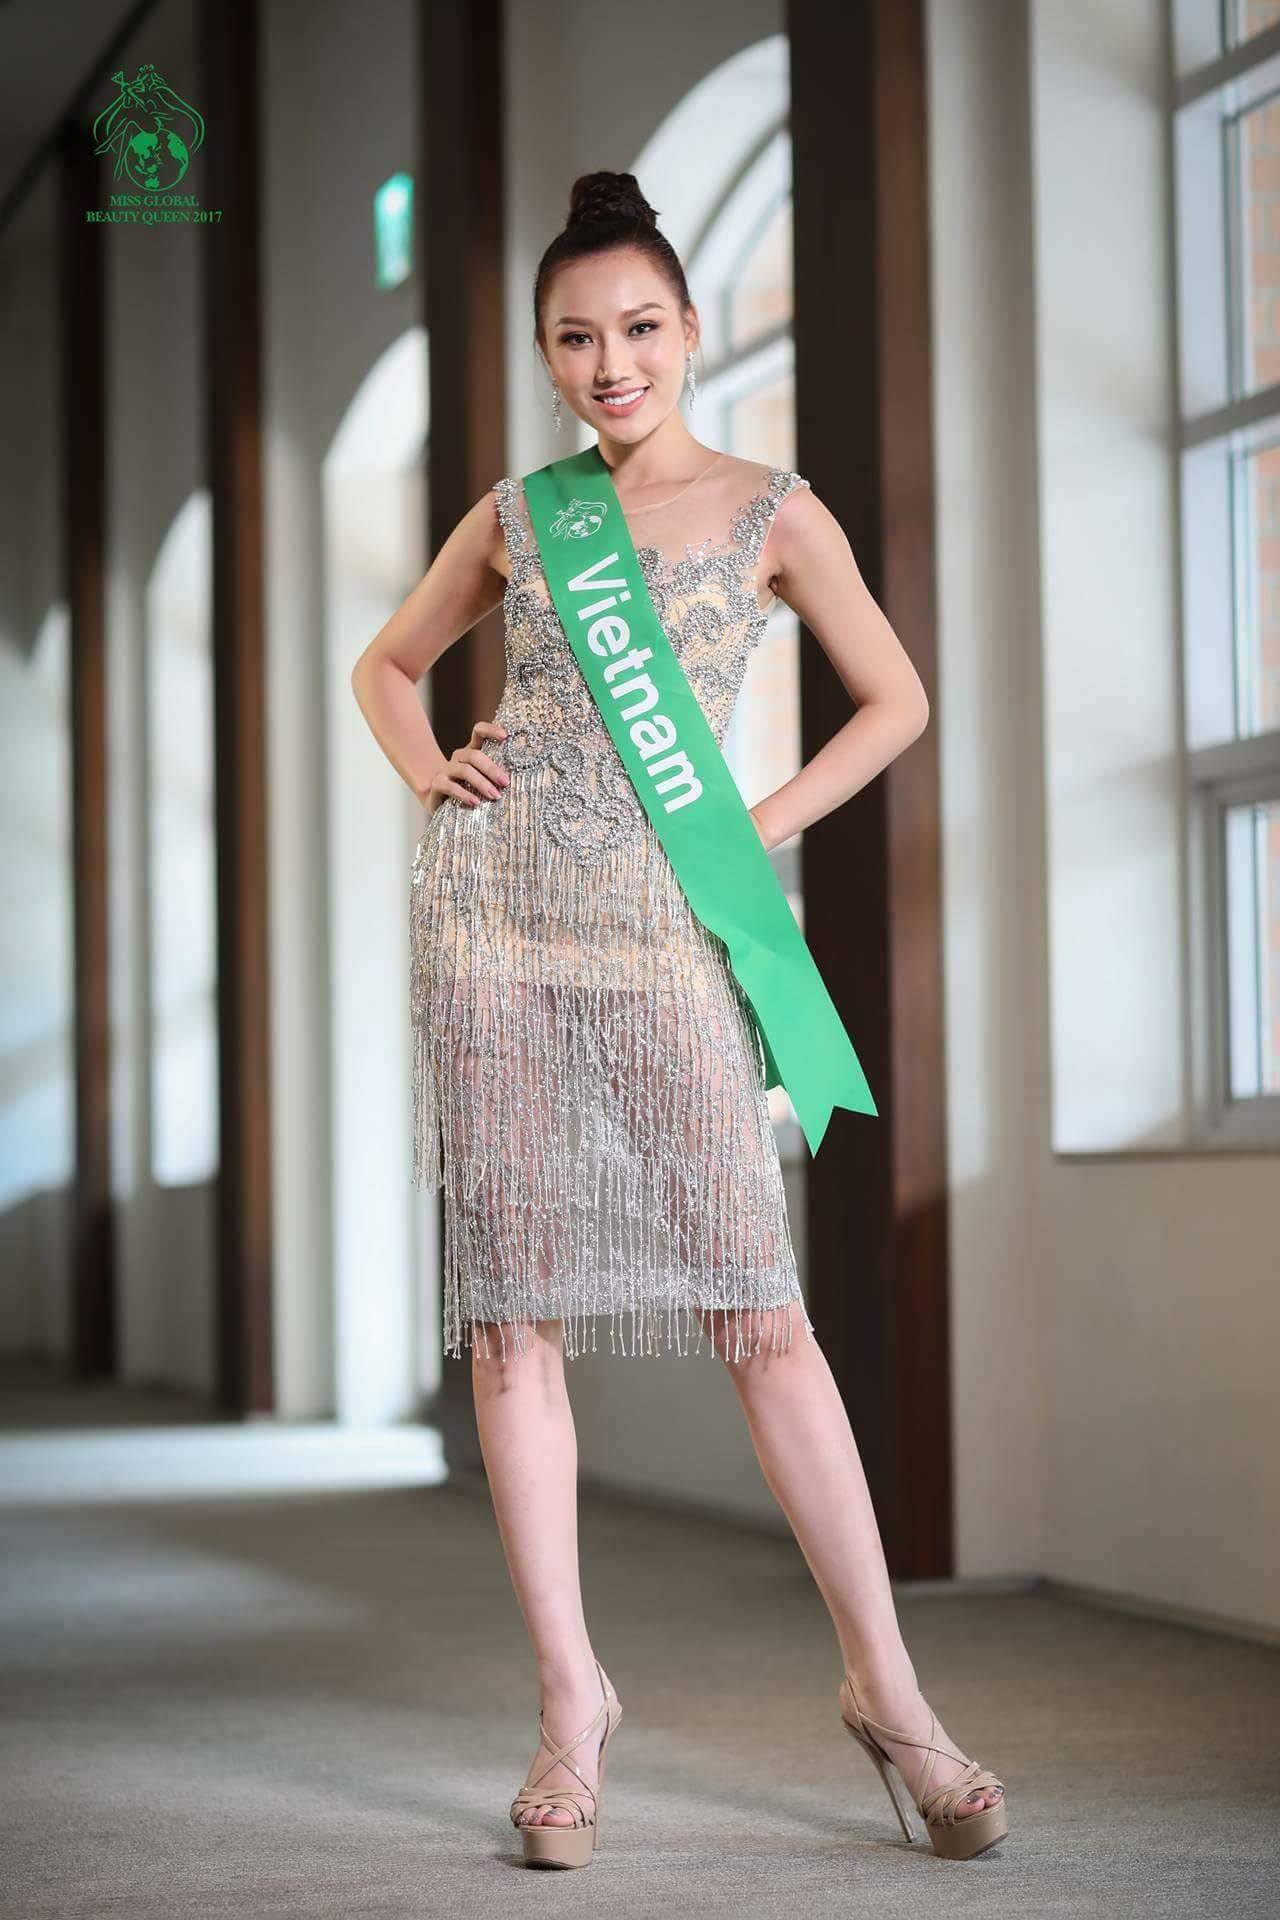 Hiện người hâm mộ đang rất kỳ vọng Á hoàng Trang sức Việt Nam 2015 Hoàng Thu Thảo sẽ tỏa sáng trong cuộc thi Nữ hoàng Sắc đẹp Toàn cầu 2017. 